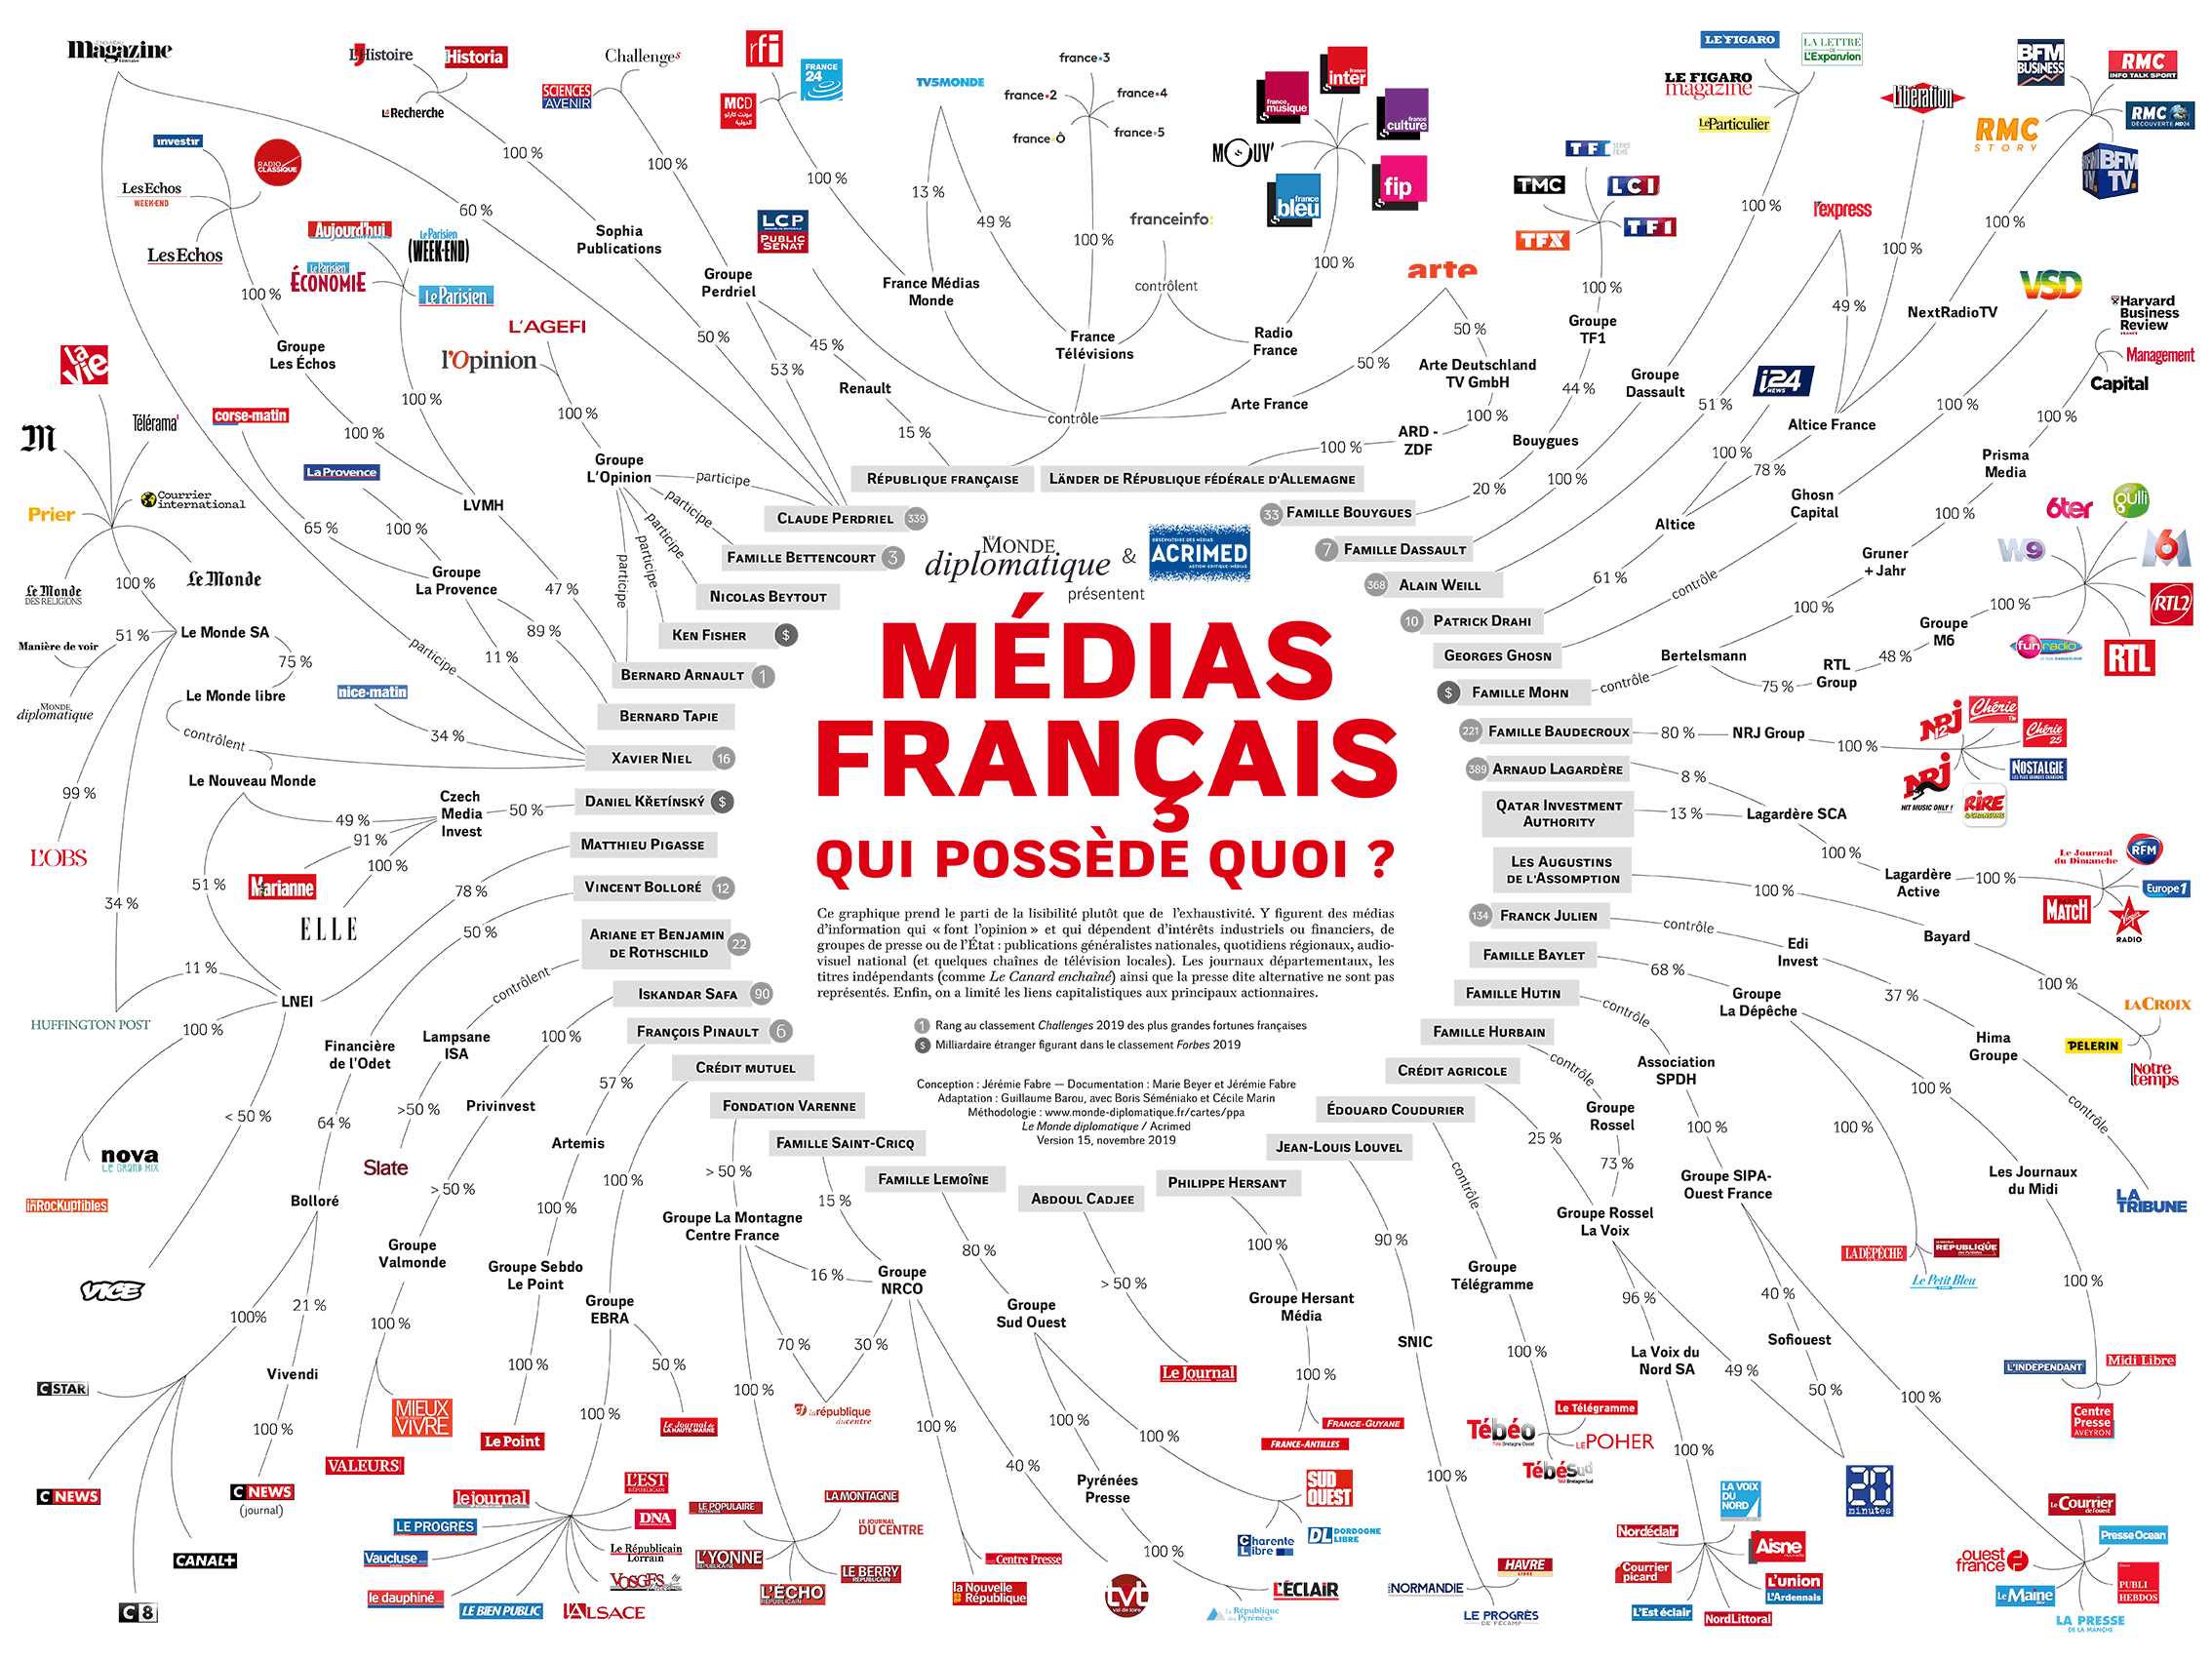 Médias français, qui possède quoi